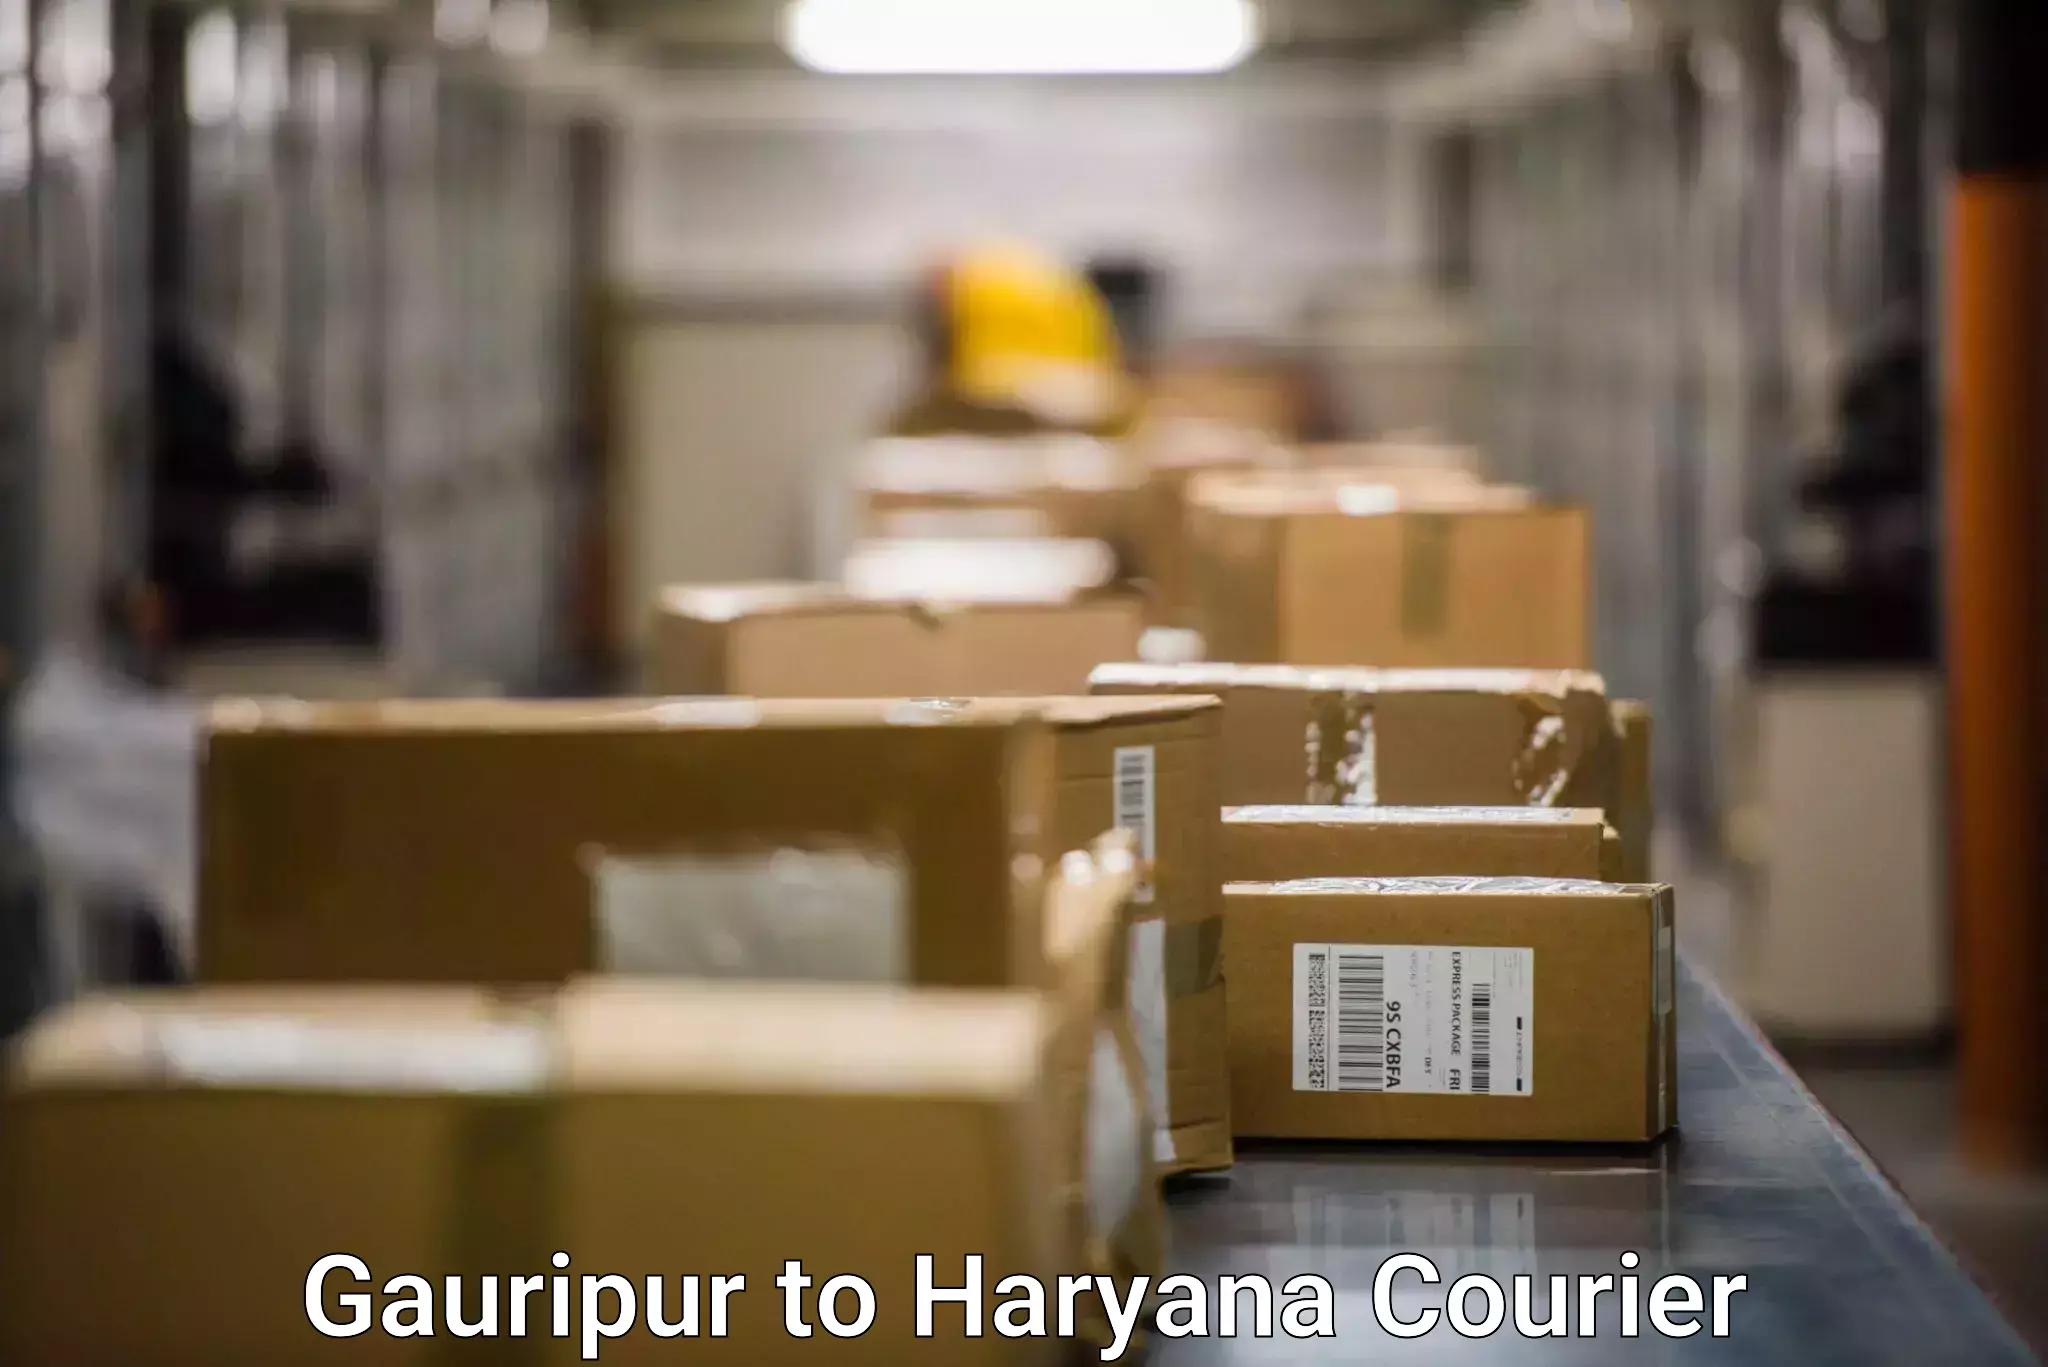 Shipping and handling Gauripur to Chaudhary Charan Singh Haryana Agricultural University Hisar